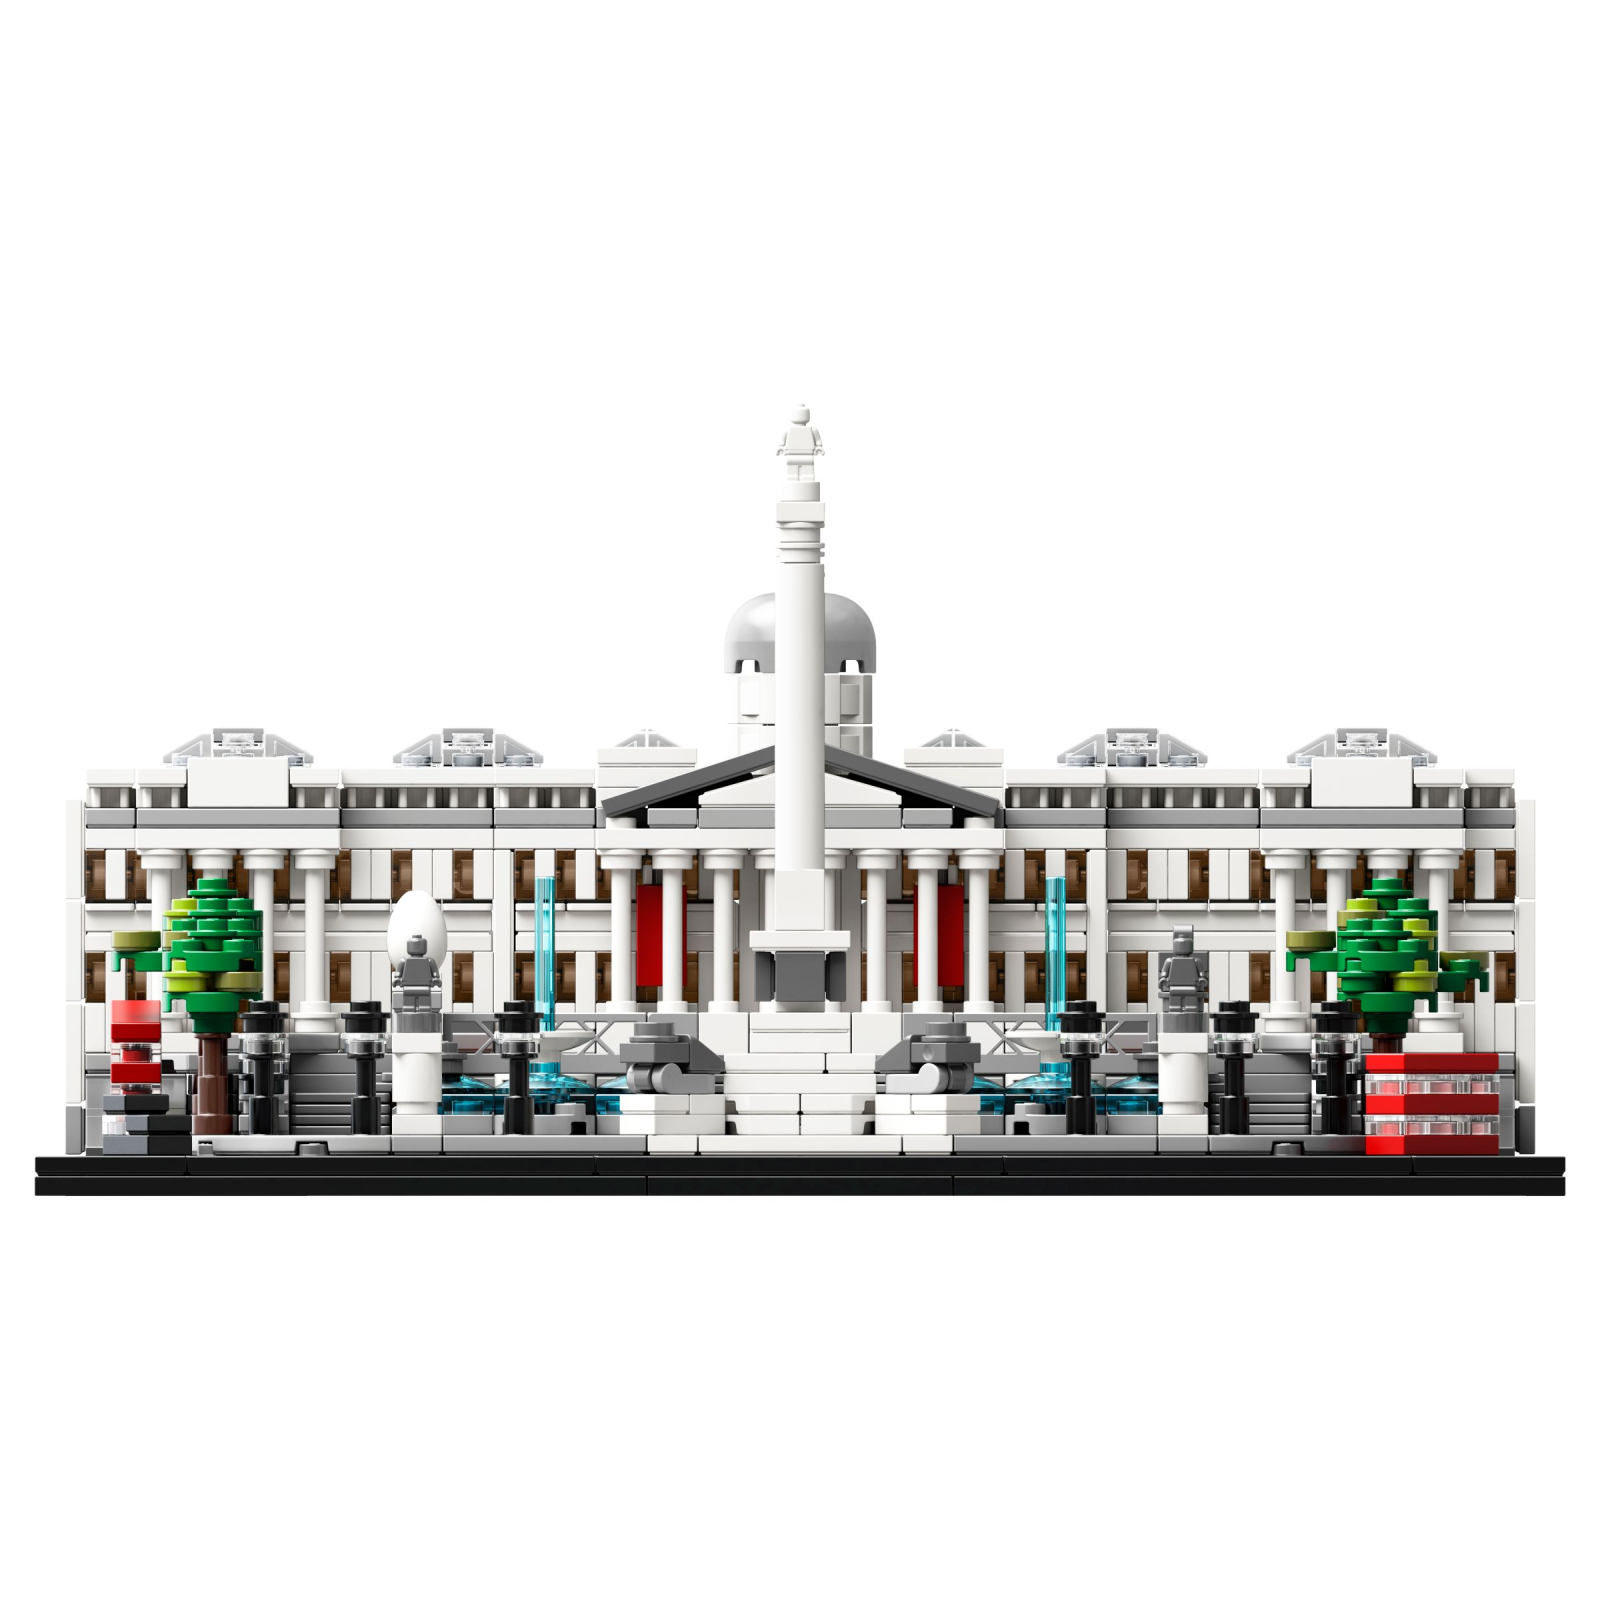 Конструктор LEGO Architecture Трафальгарская площадь 1197 деталей (21045) изображение 4